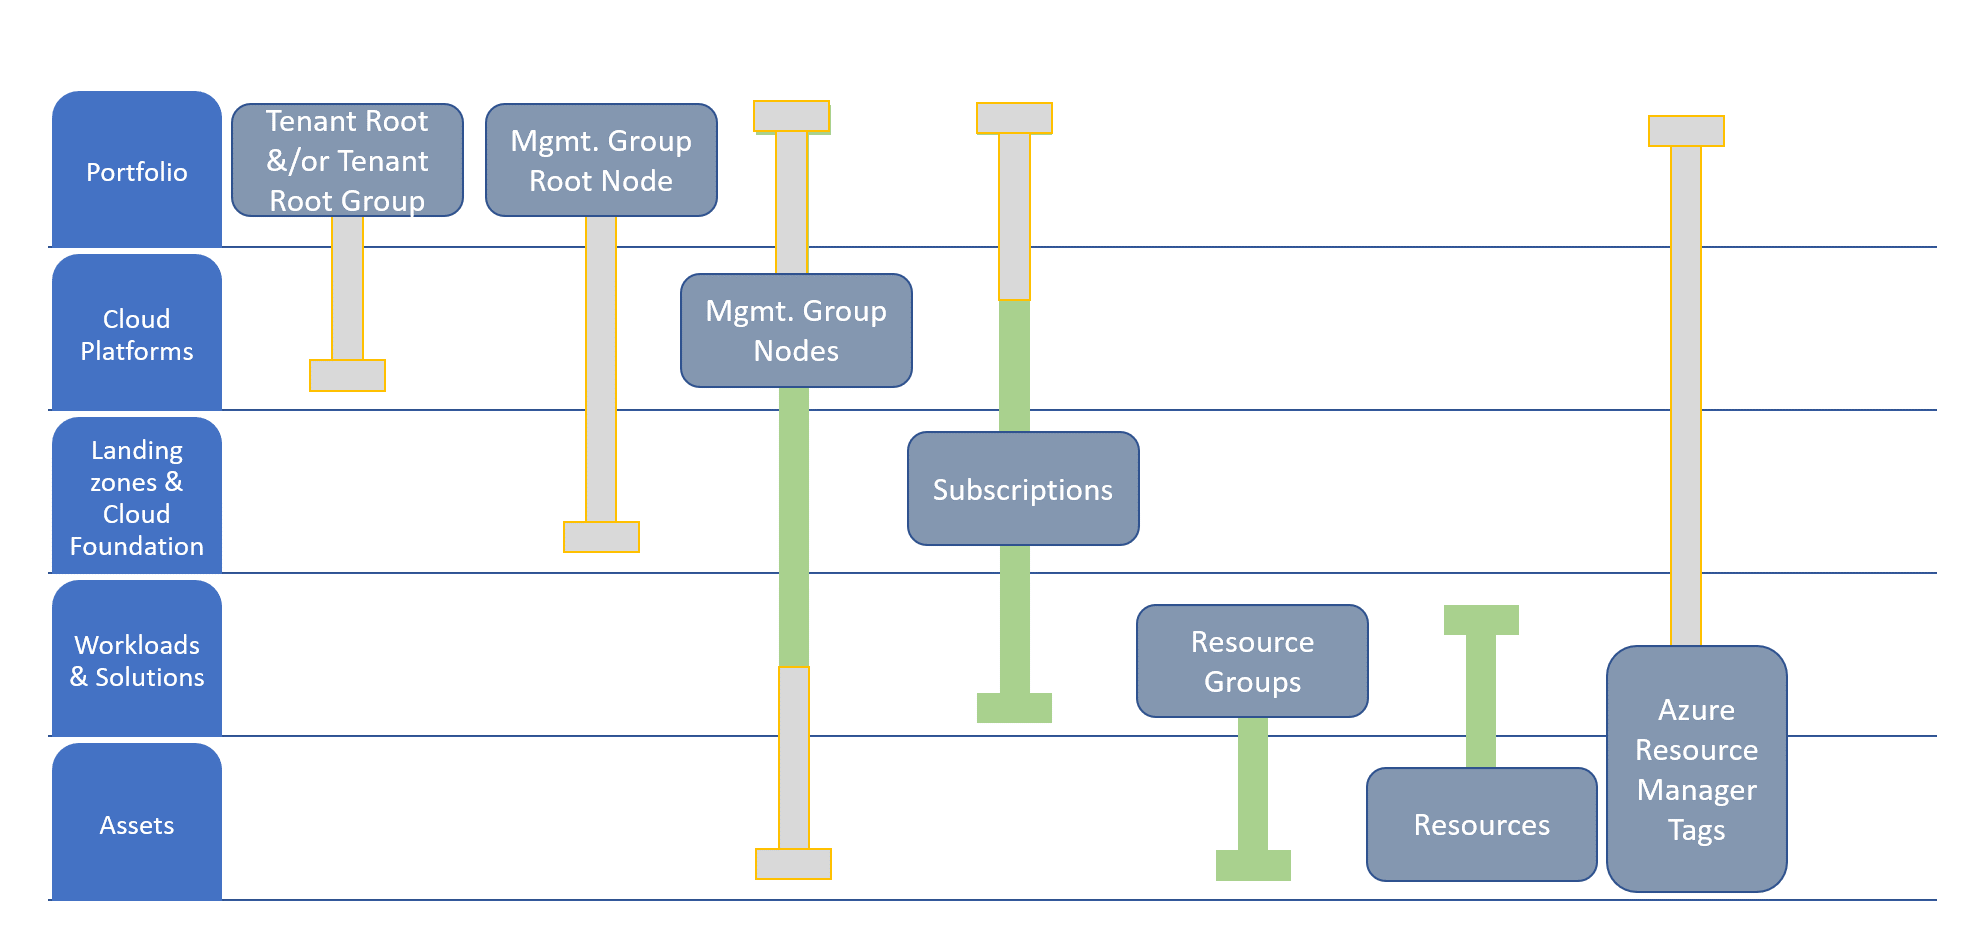 Organisation des ressources alignée sur la hiérarchie